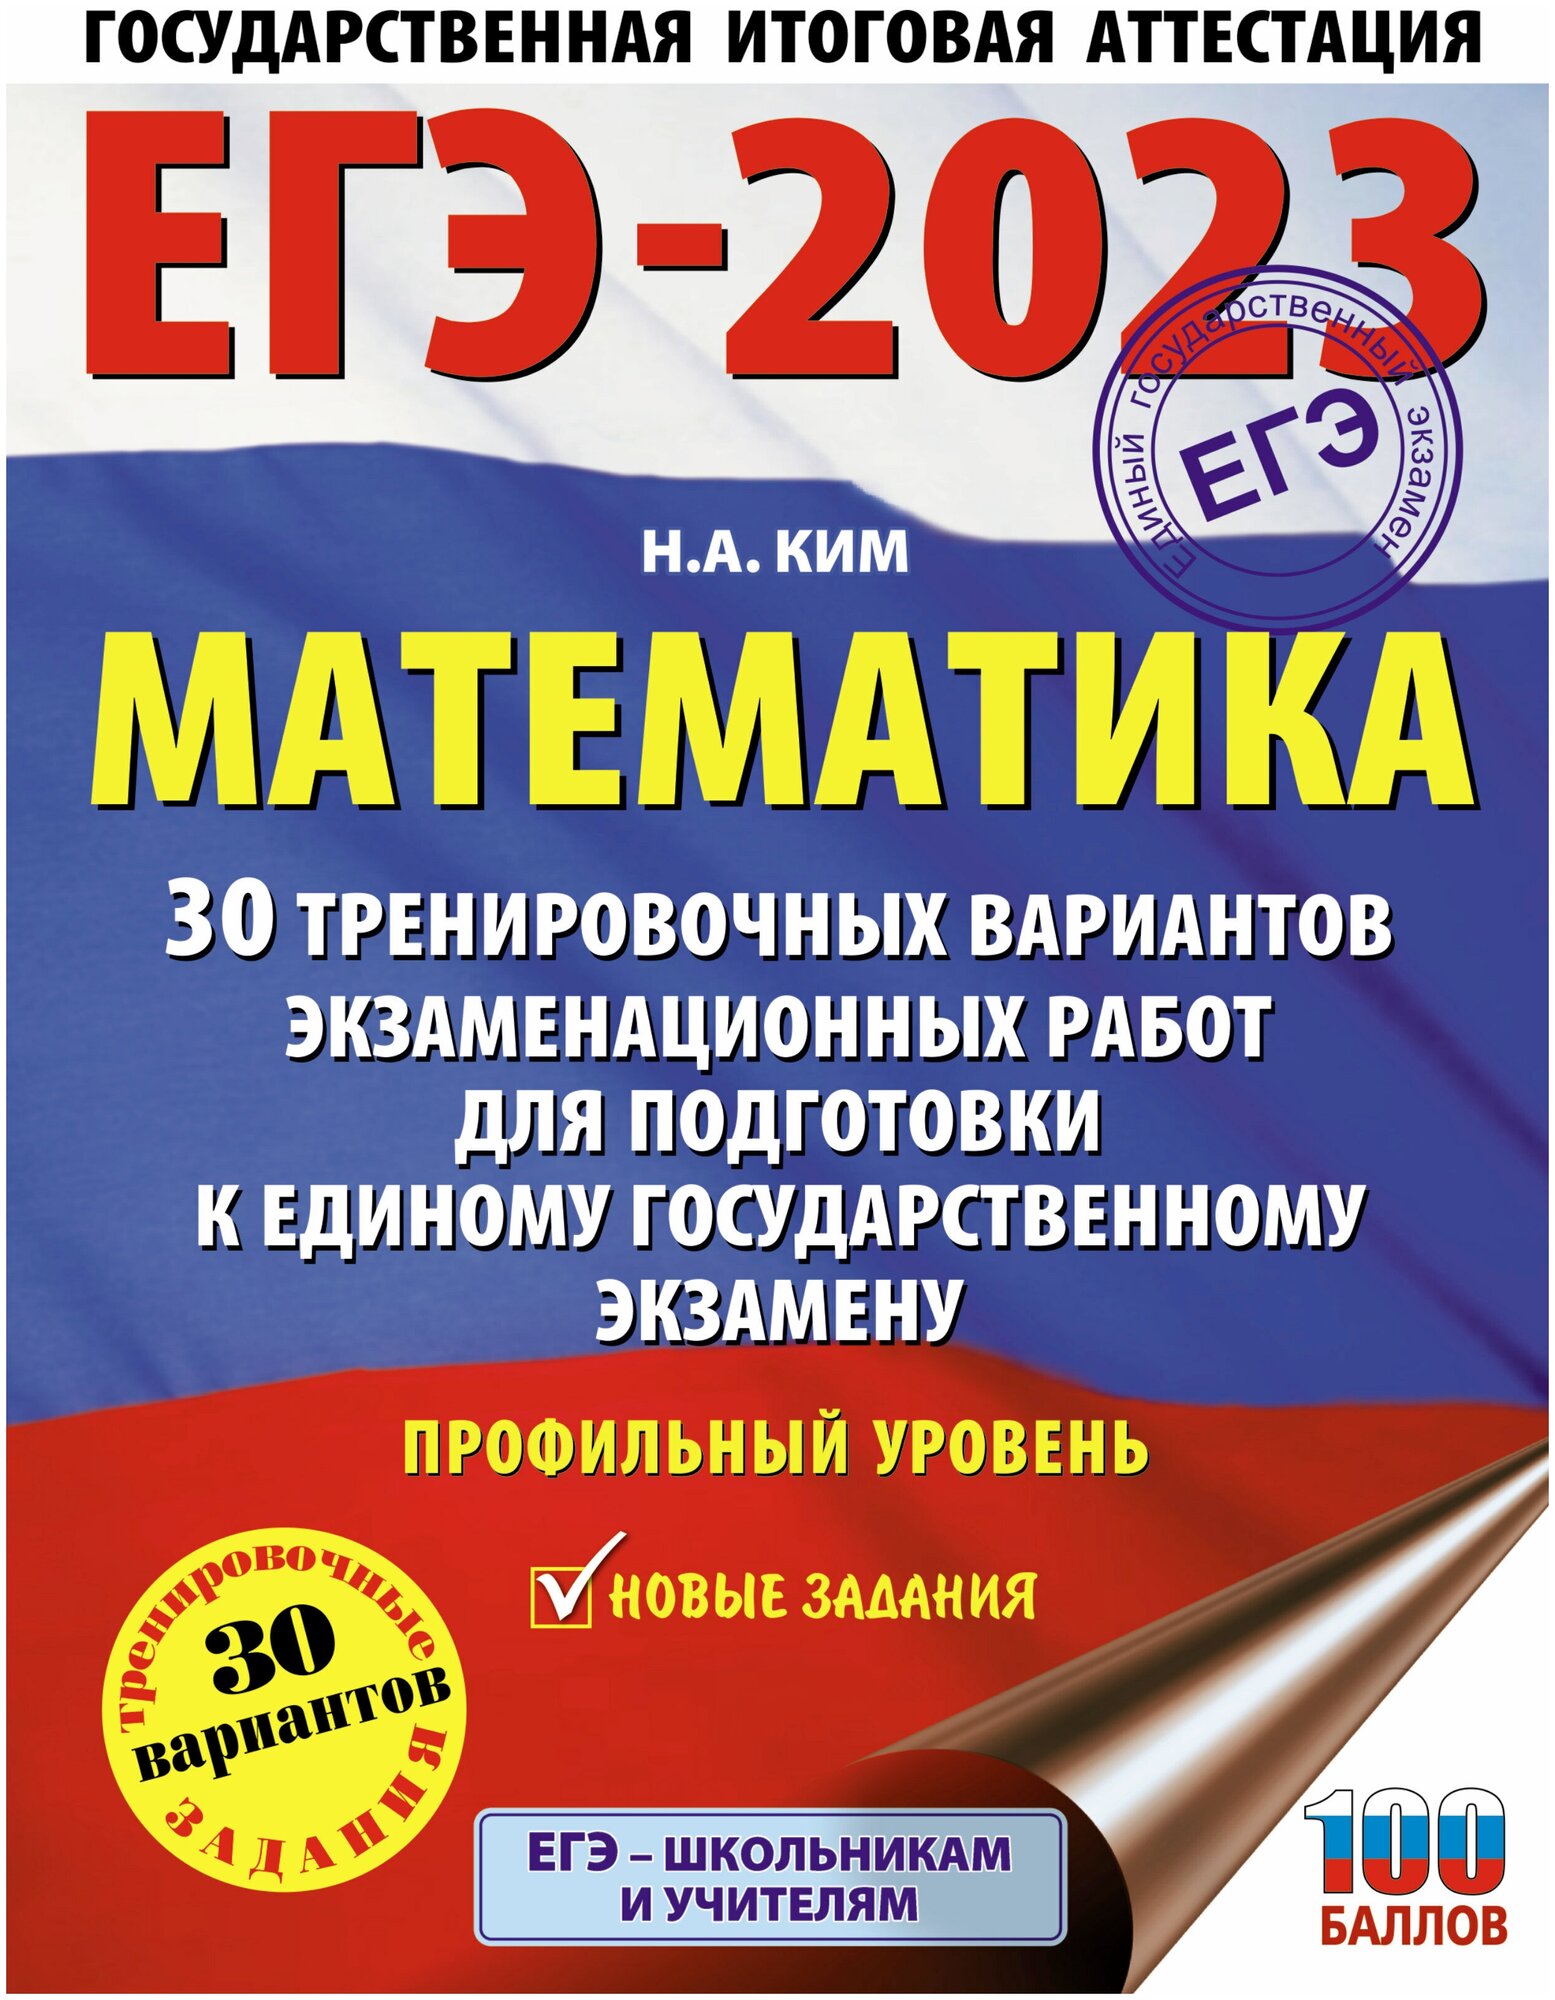 ЕГЭ-2023. Математика (60х84/8). 30 тренировочных вариантов экзаменационных работ для подготовки к единому государственному экзамену. Профильный уровень - фото №1